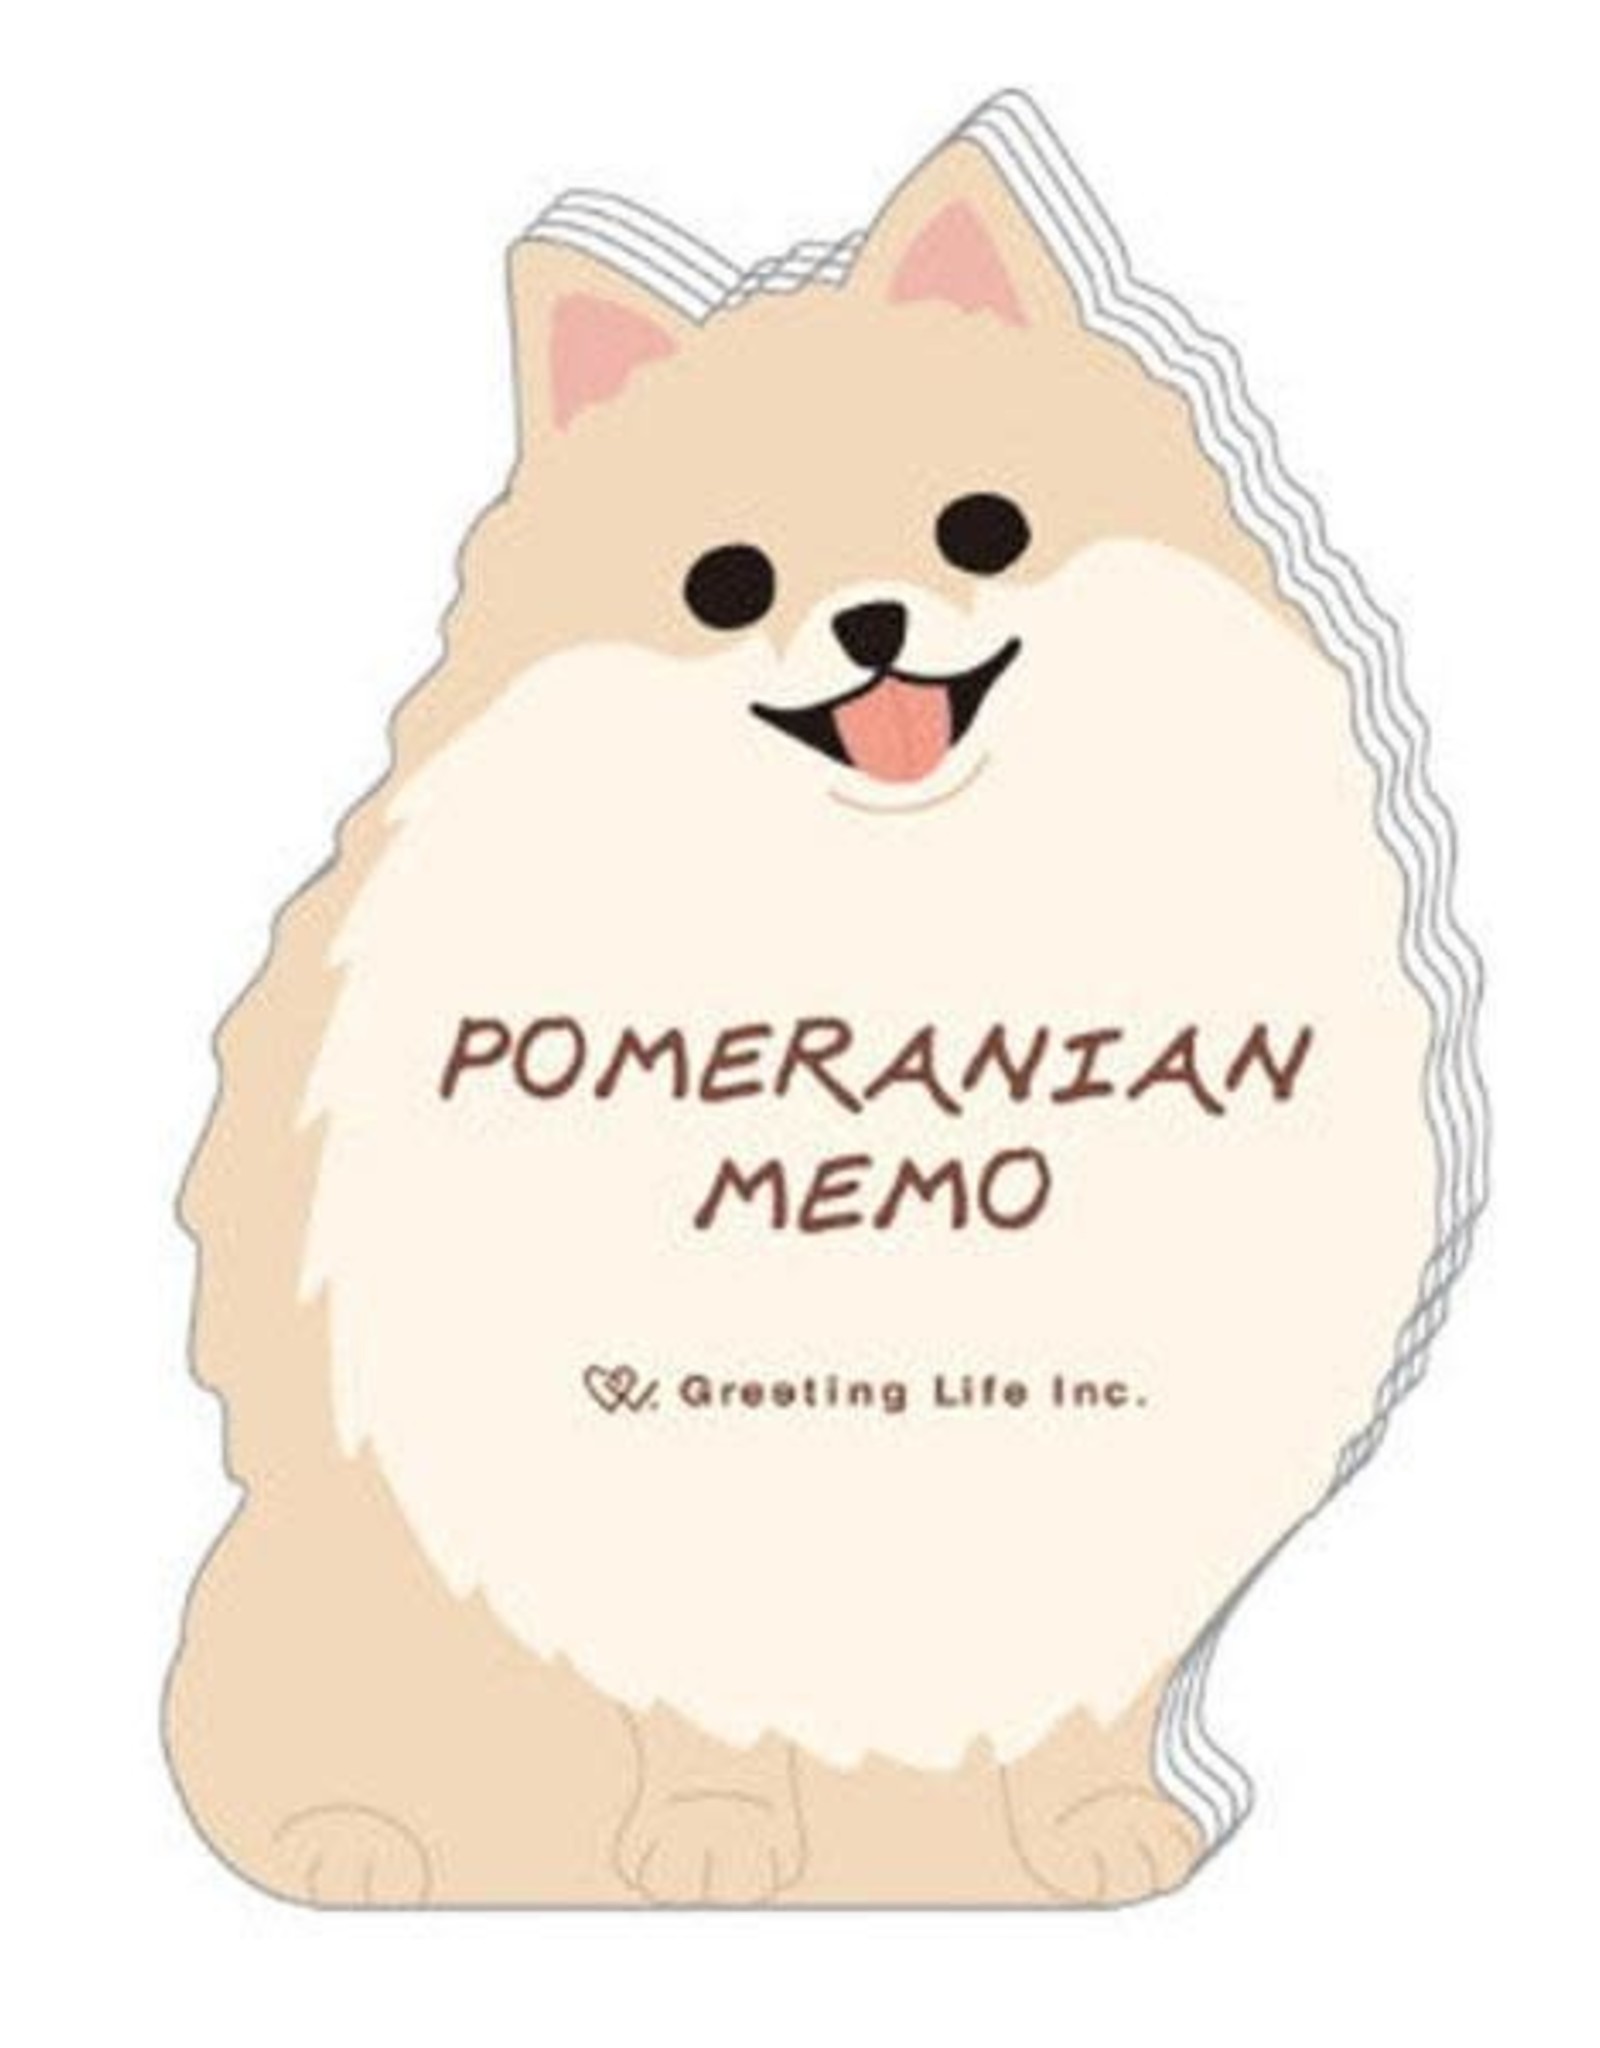 Greeting Life Die Cut Dog Memo Pad